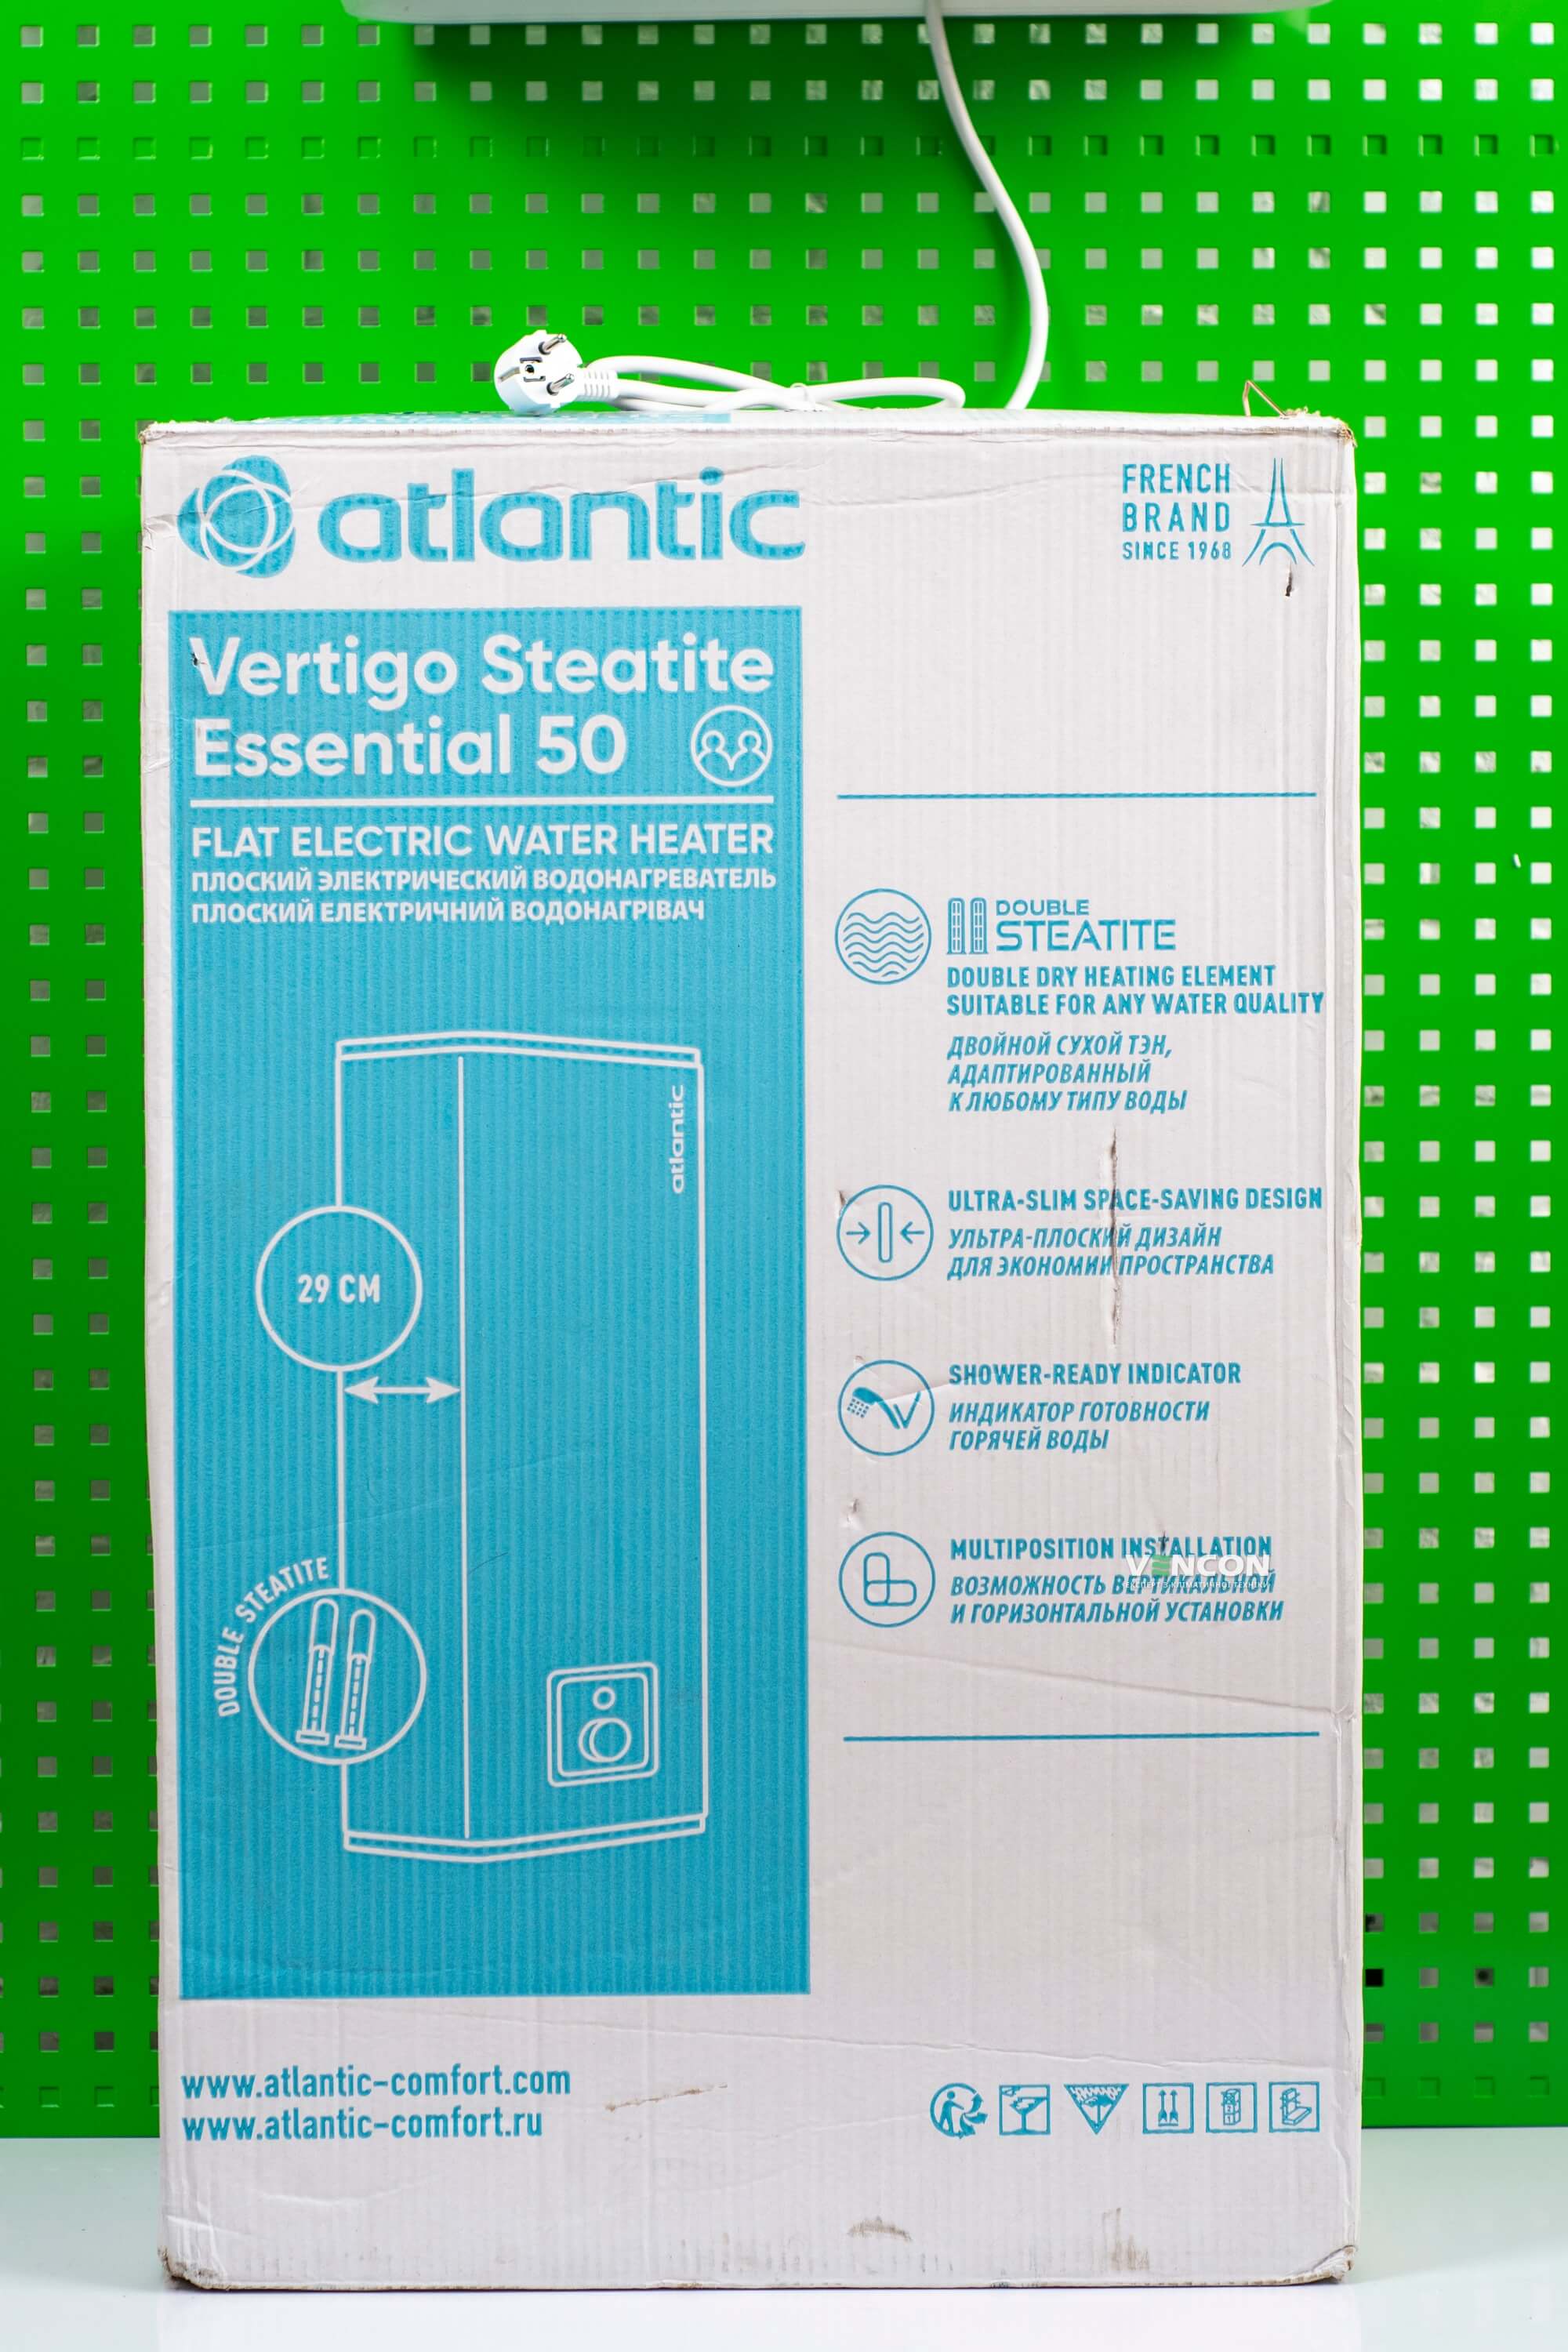 фото продукту Atlantic Vertigo Steatite Essential 50 MP-040 2F 220E-S - 24